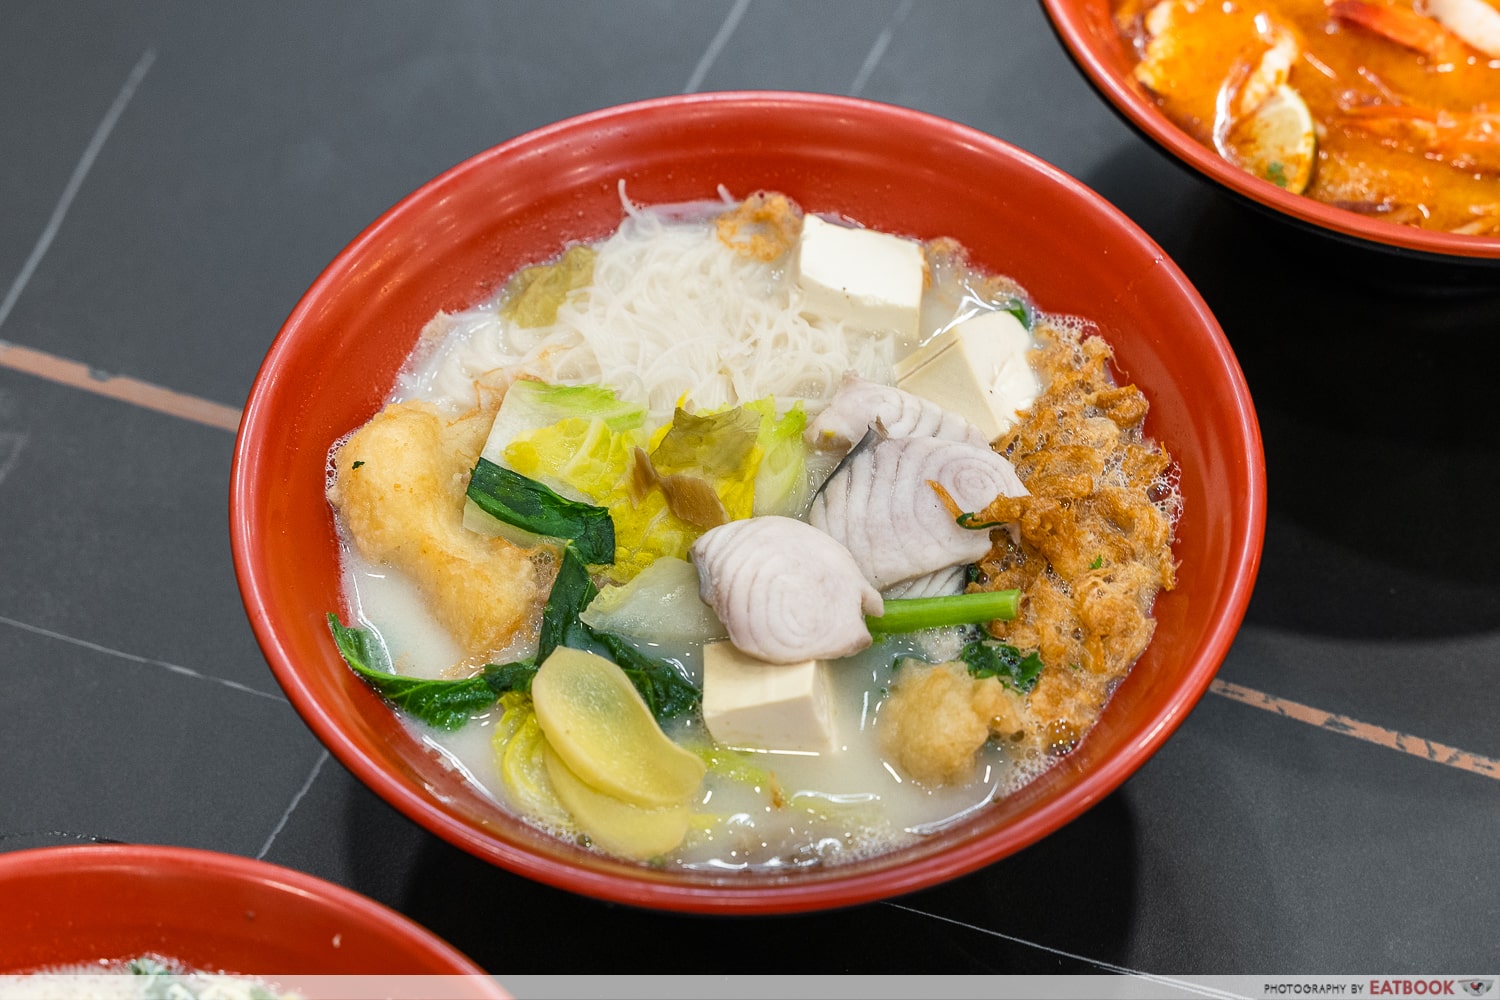 Hot-Spot-Cafe-Restaurant-Double-fish-soup